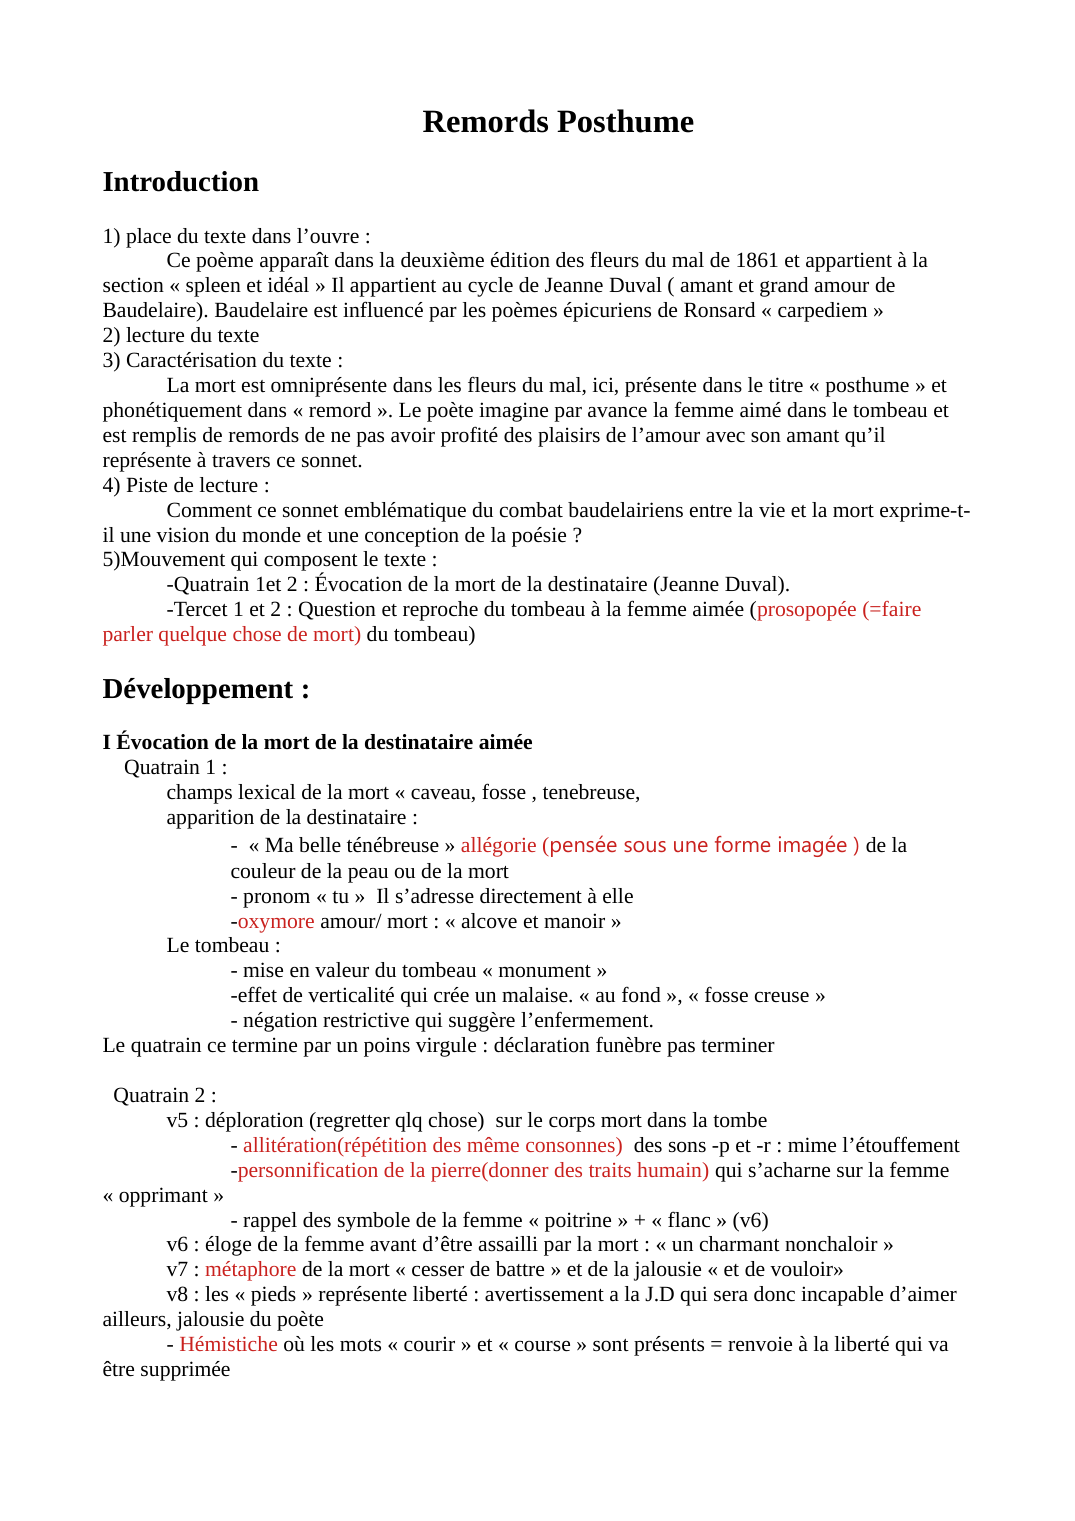 Prévisualisation du document Remords Posthume, Baudelaire